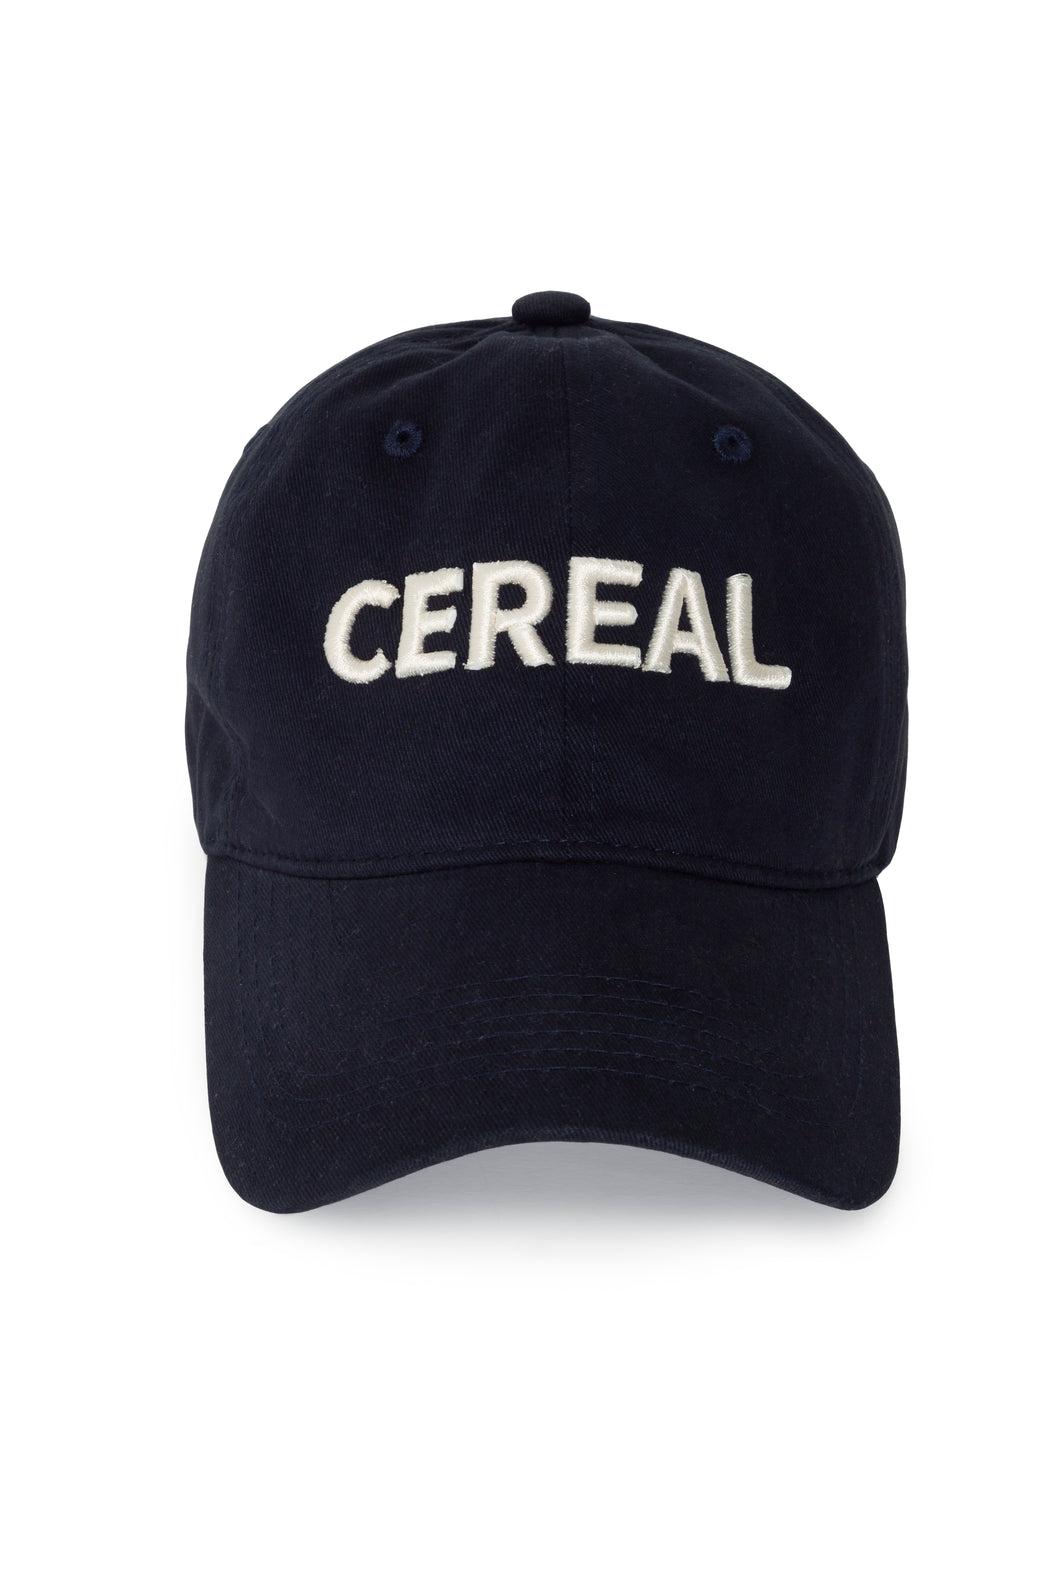 Cereal Dad Hat